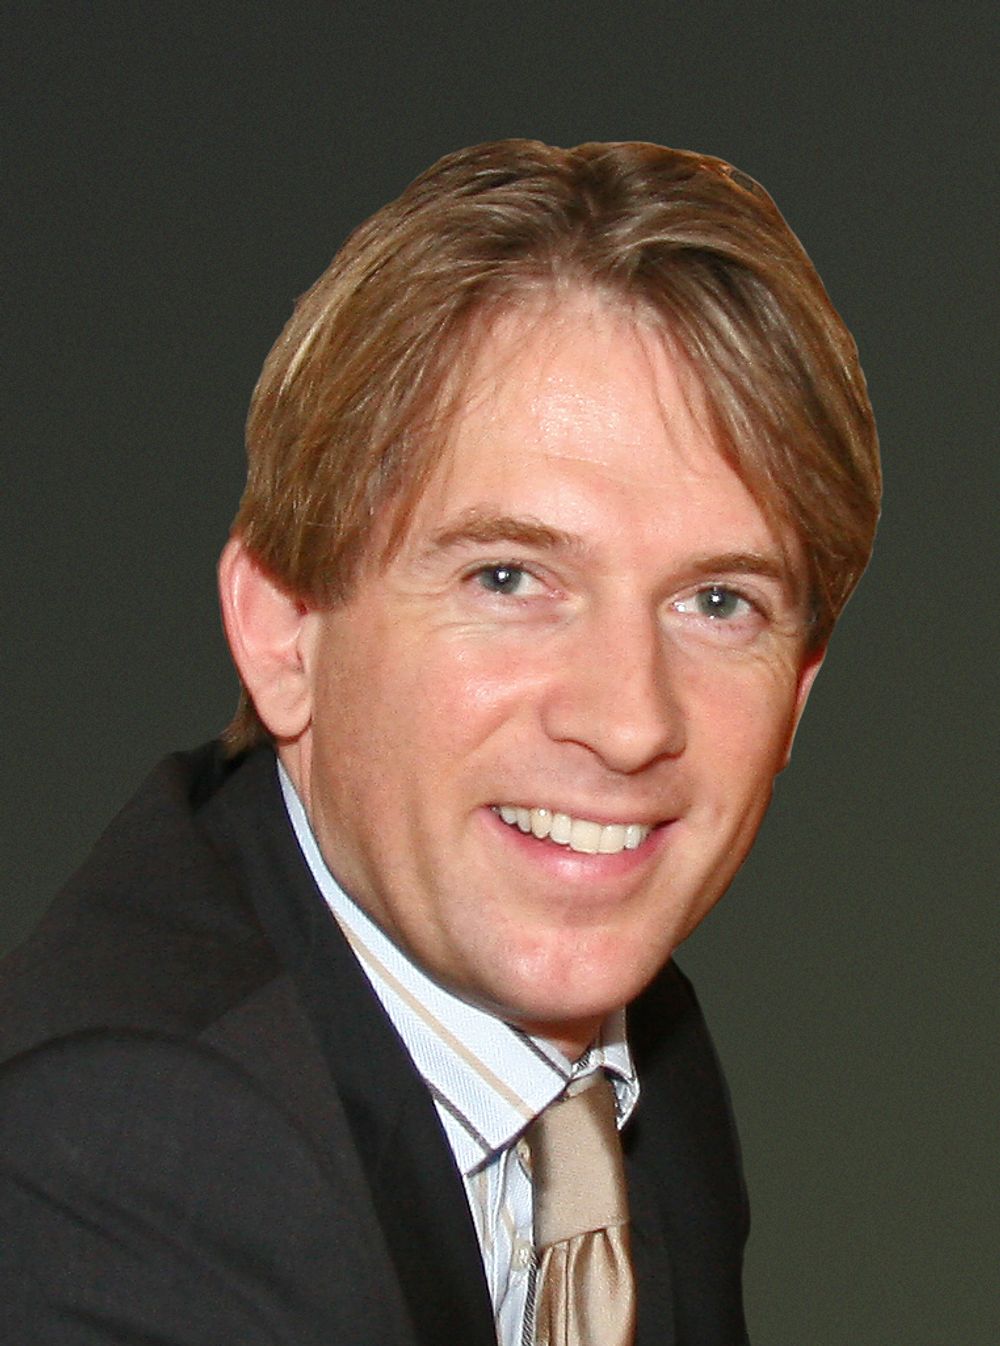 EIVIND ROALD er ny adm. direktør i HP Norge. Han er diplomøkonom fra BI med lang erfaring i teknologisalg fra Accenture. Han har jobbet med HP som kunde siden selskapet fusjonerte med Compaq. I november 2004 ble han salgsdirektør i HP.